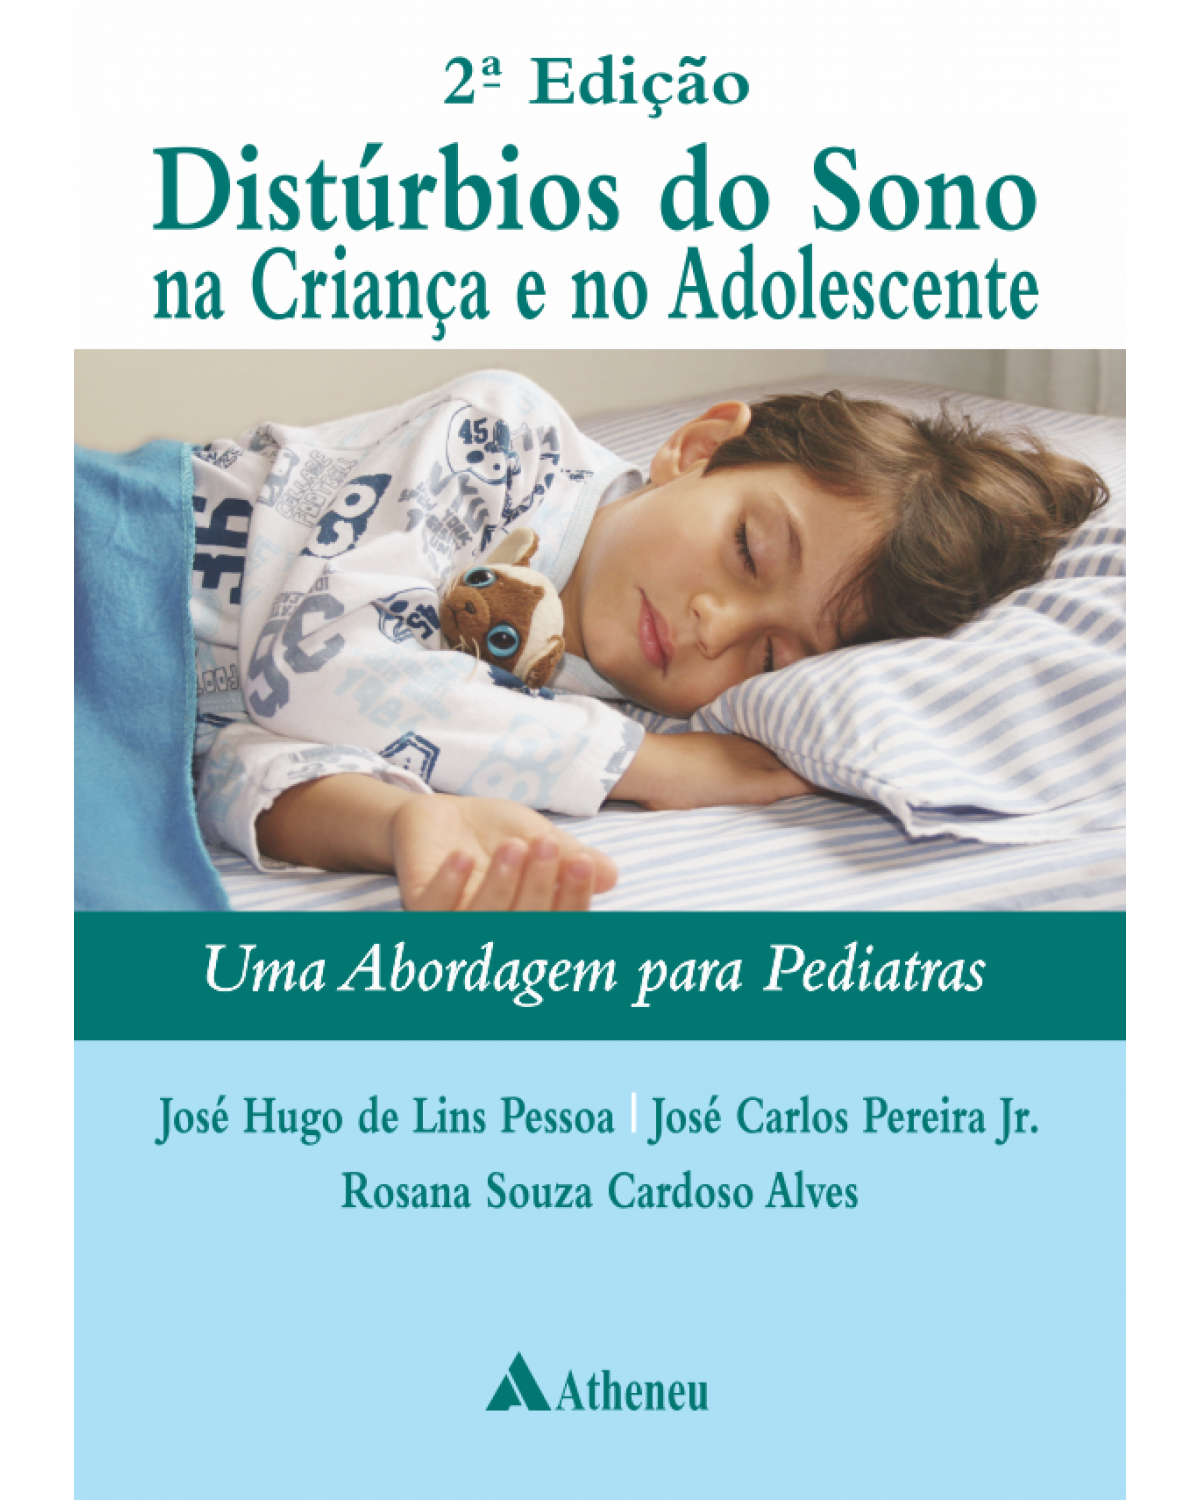 Distúrbios do sono na criança e no adolescente - uma abordagem para pediatras - 2ª Edição | 2015